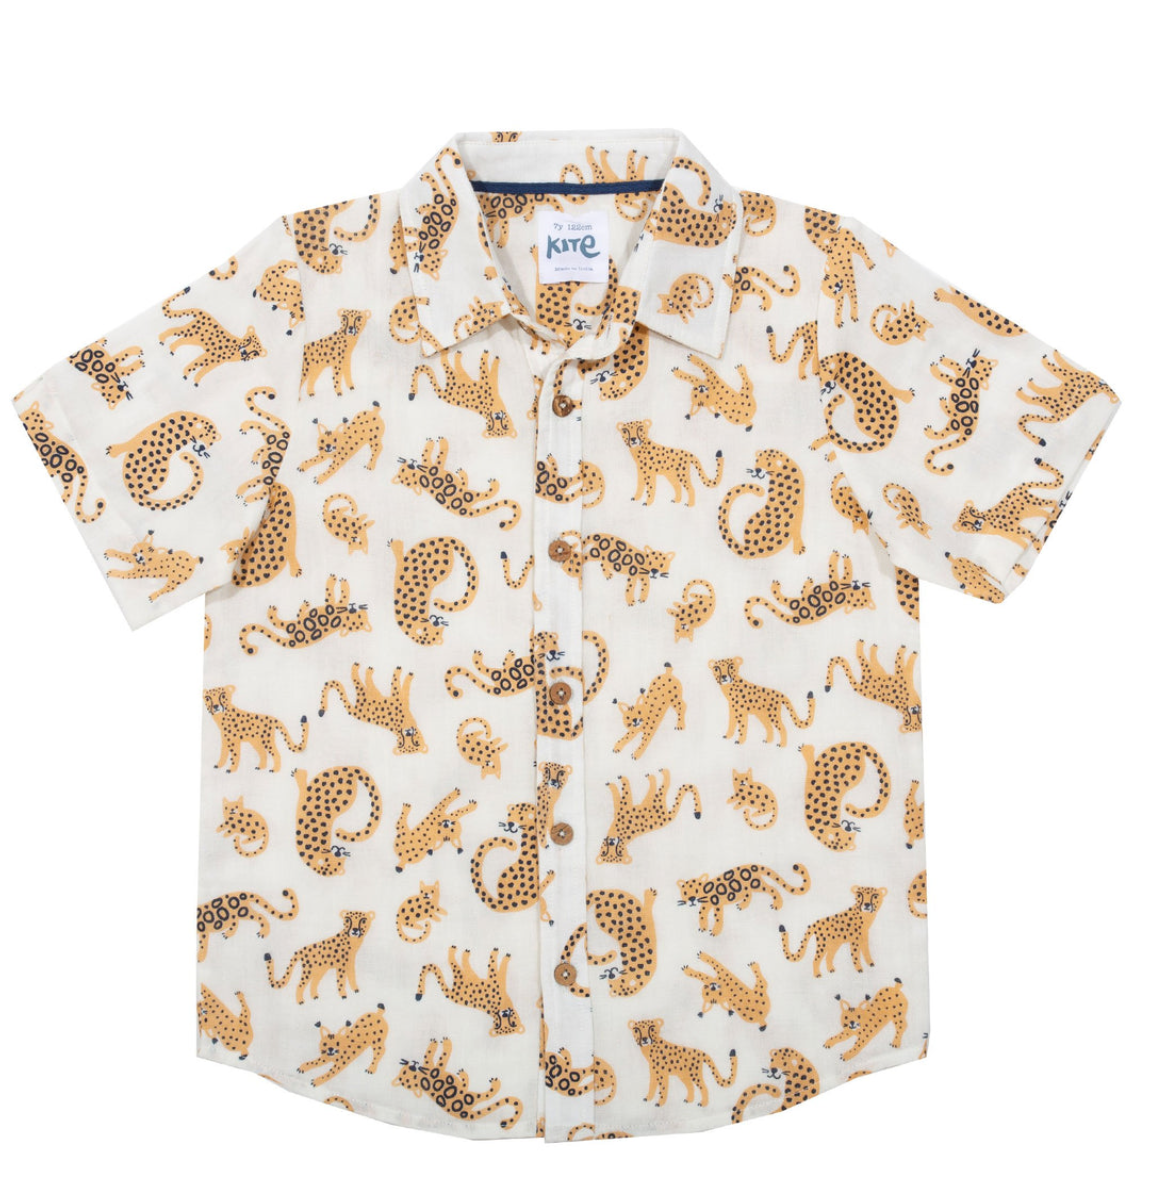 Kinder Musselin Sommer Shirt Wildkatzen Königreich